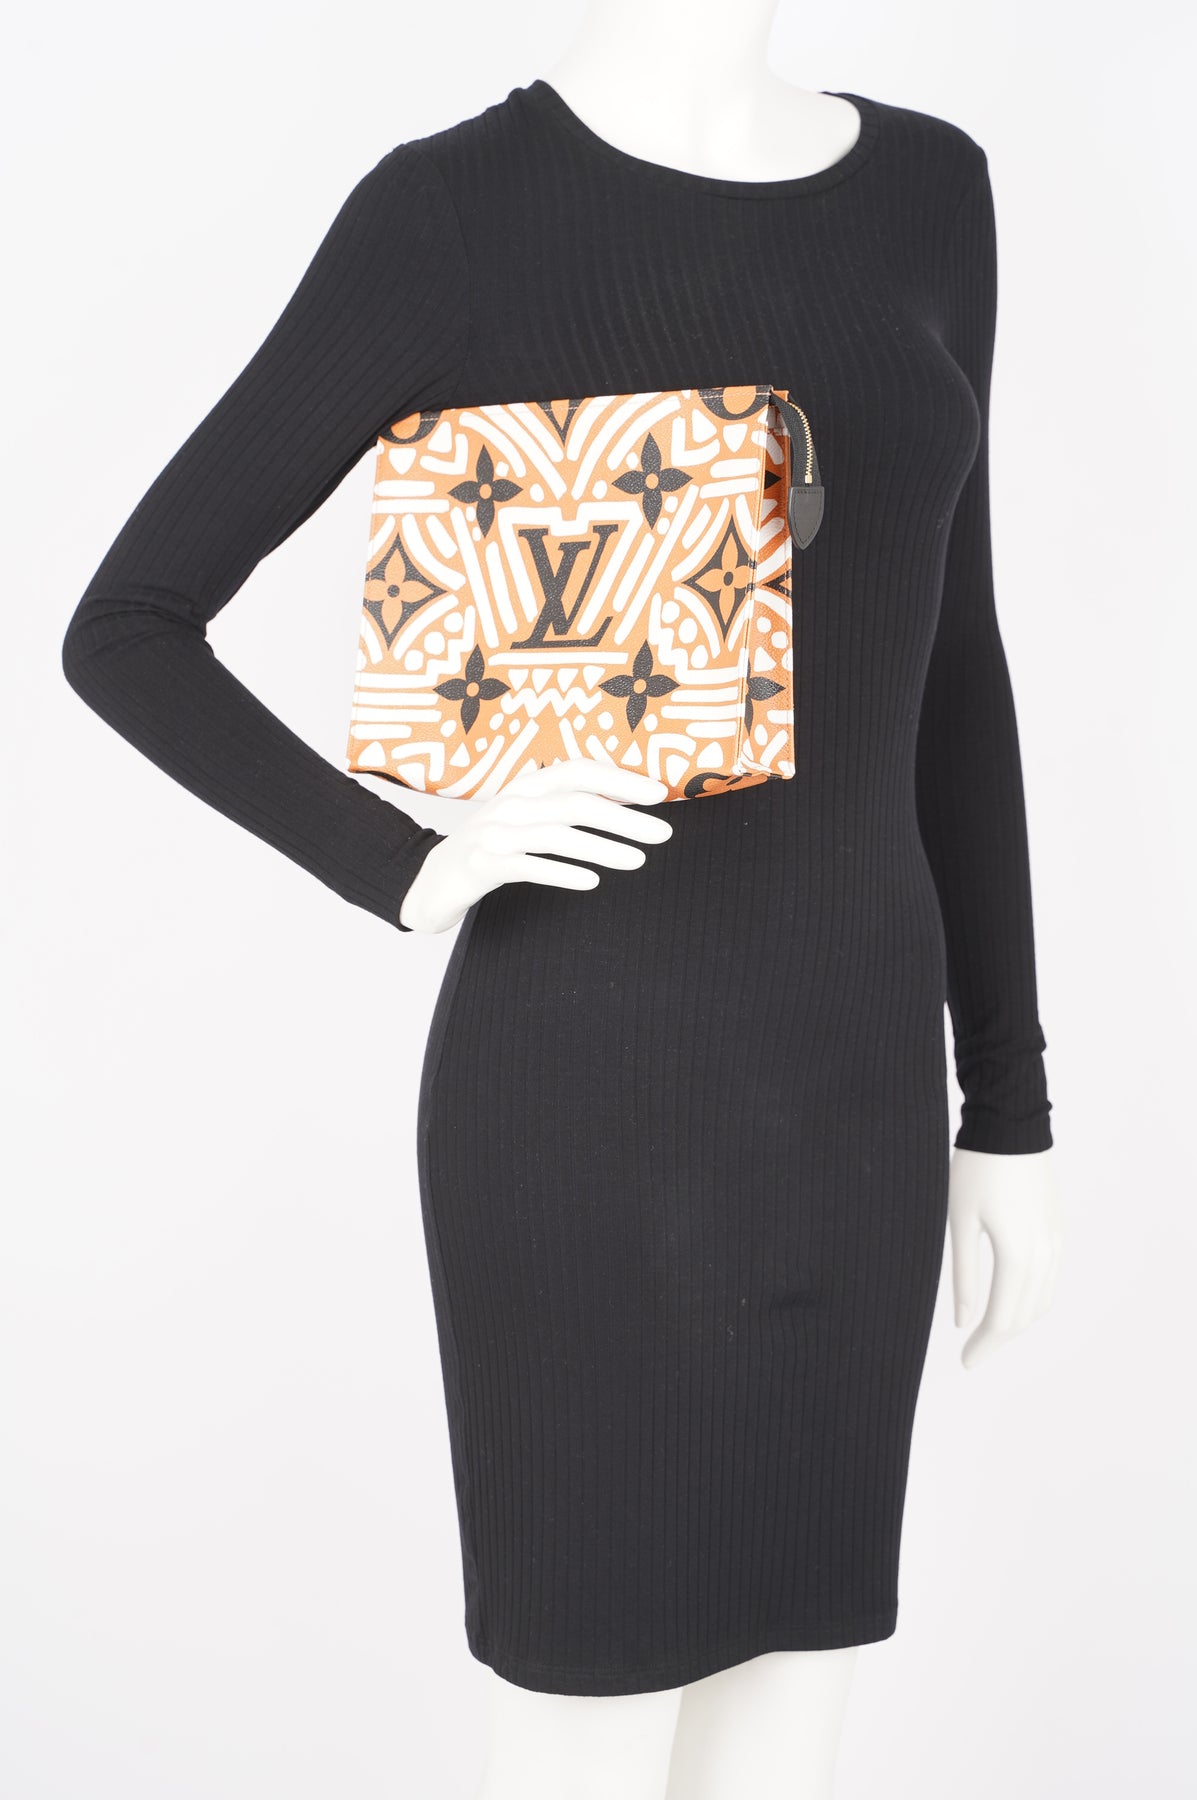 Louis Vuitton Limited Edition Tribal Double Pochette Bag